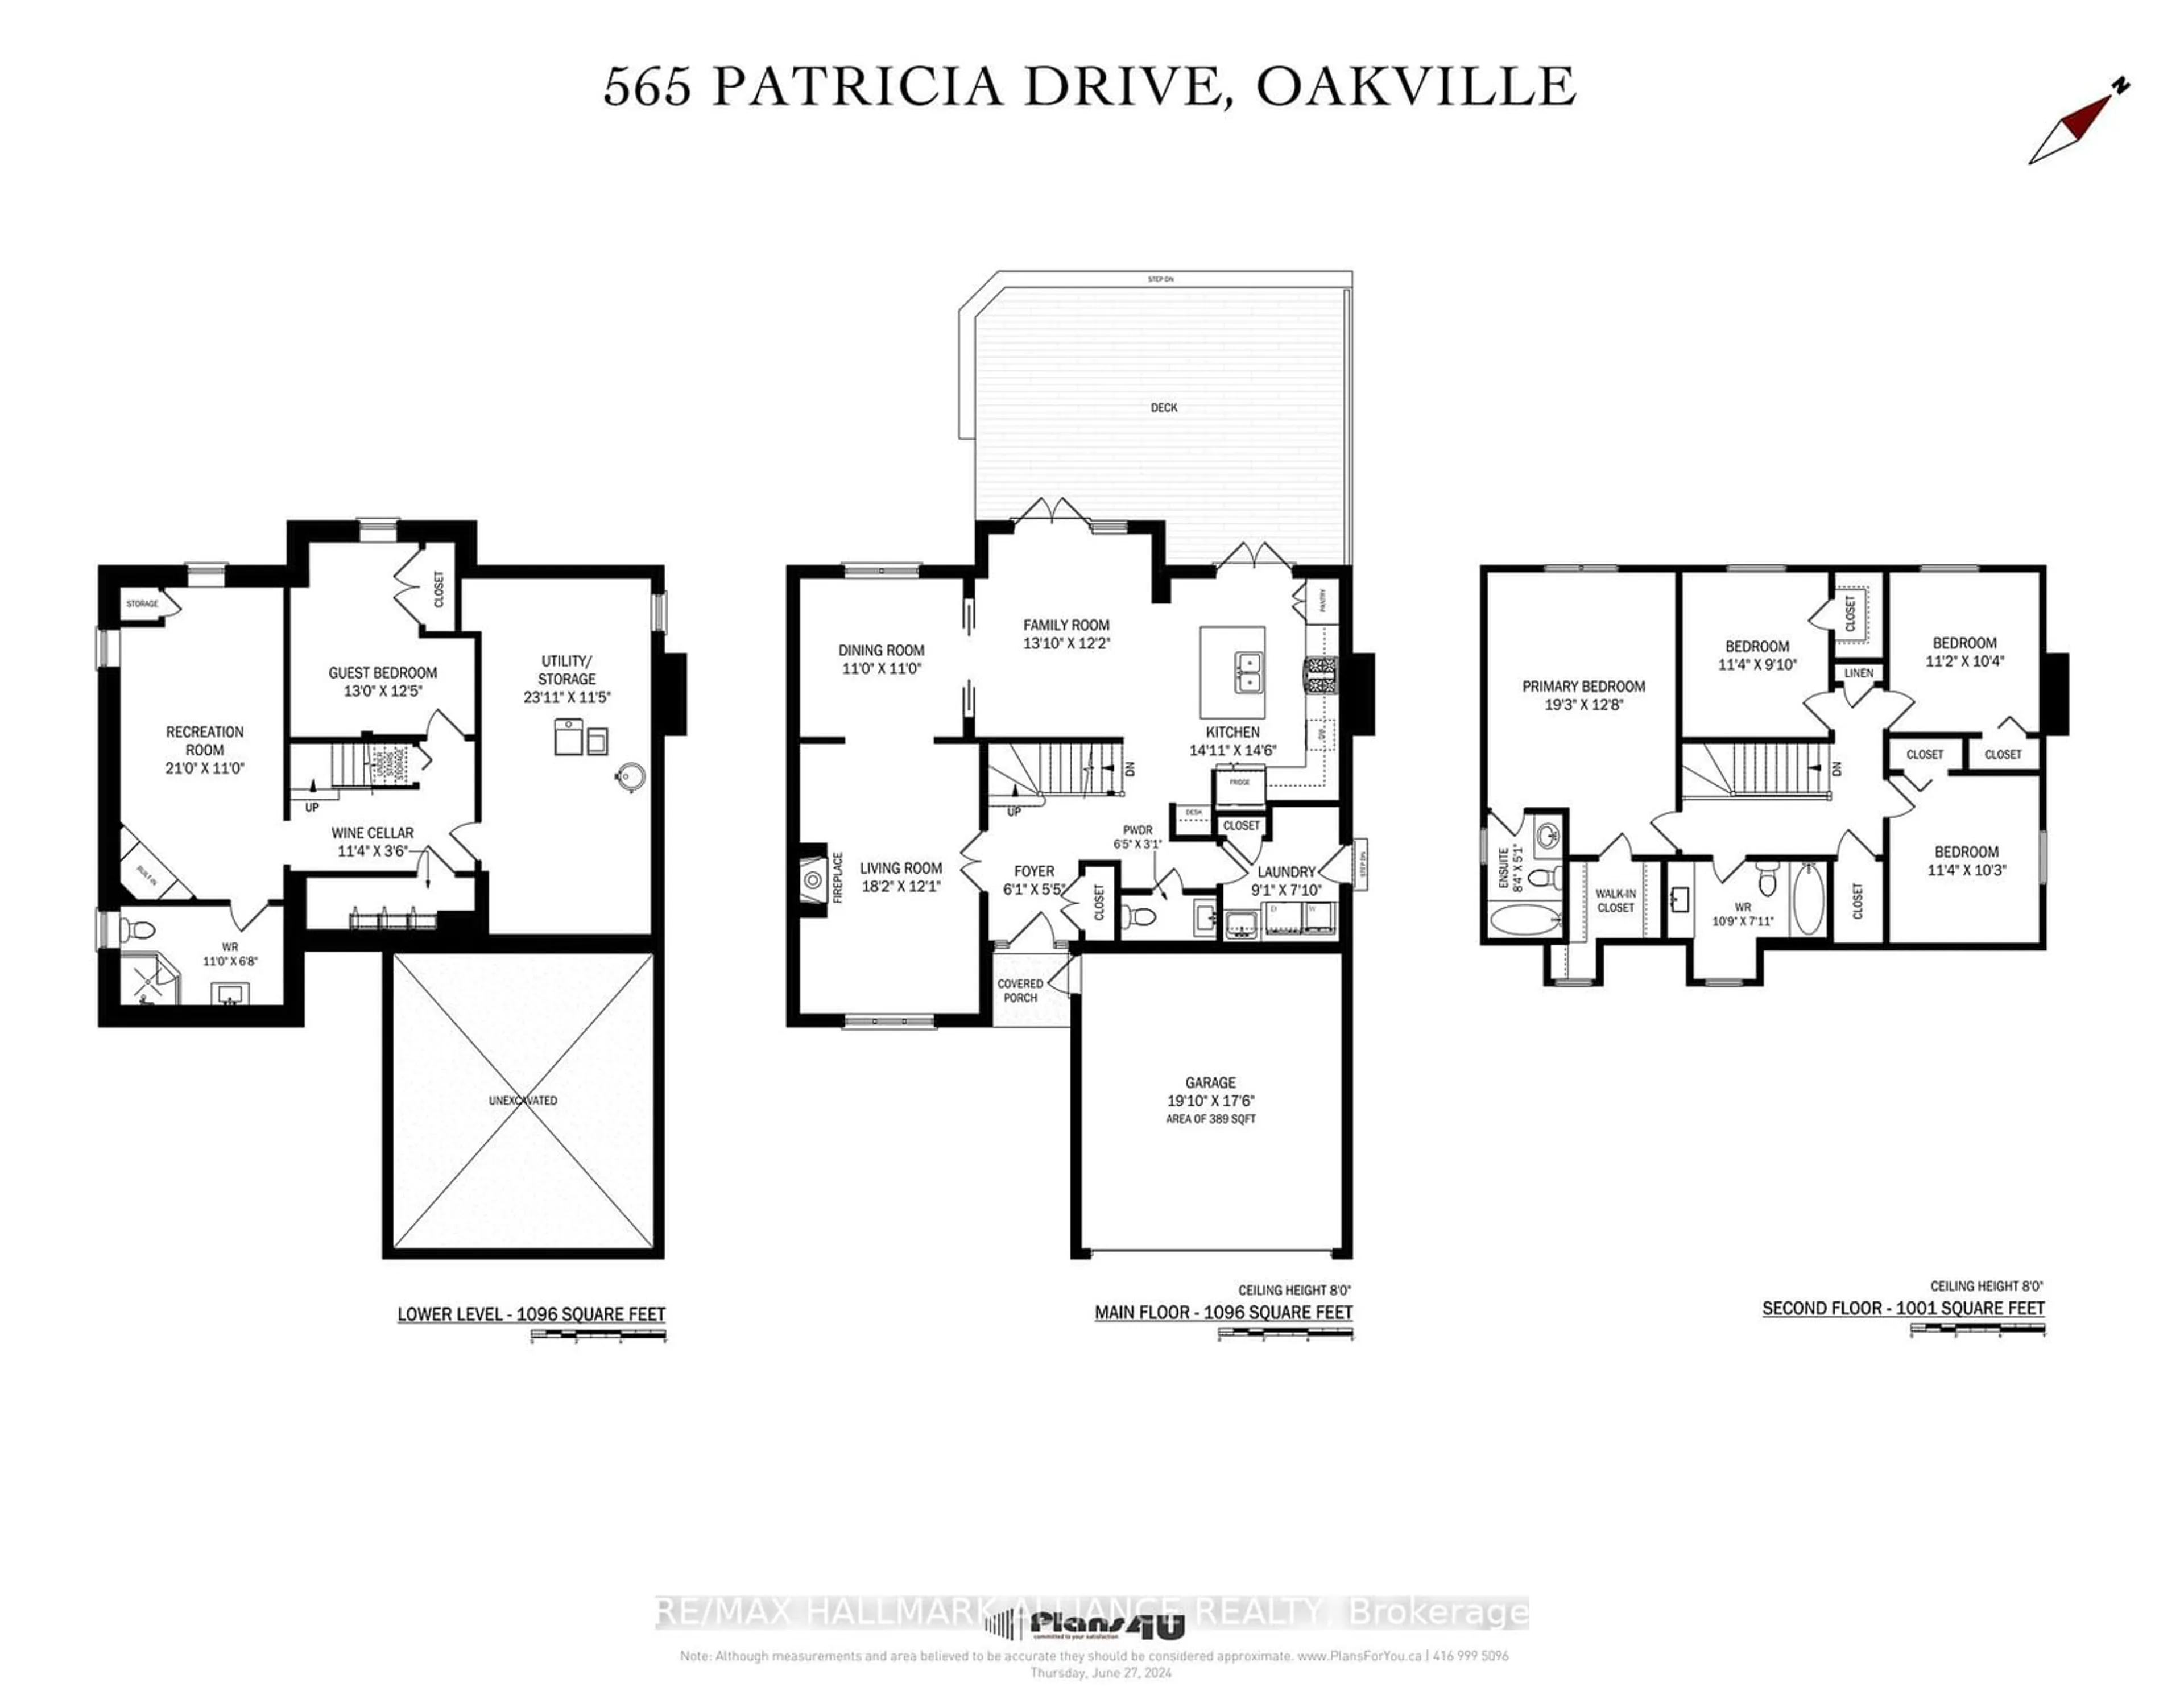 Floor plan for 565 Patricia Dr, Oakville Ontario L6K 1M4